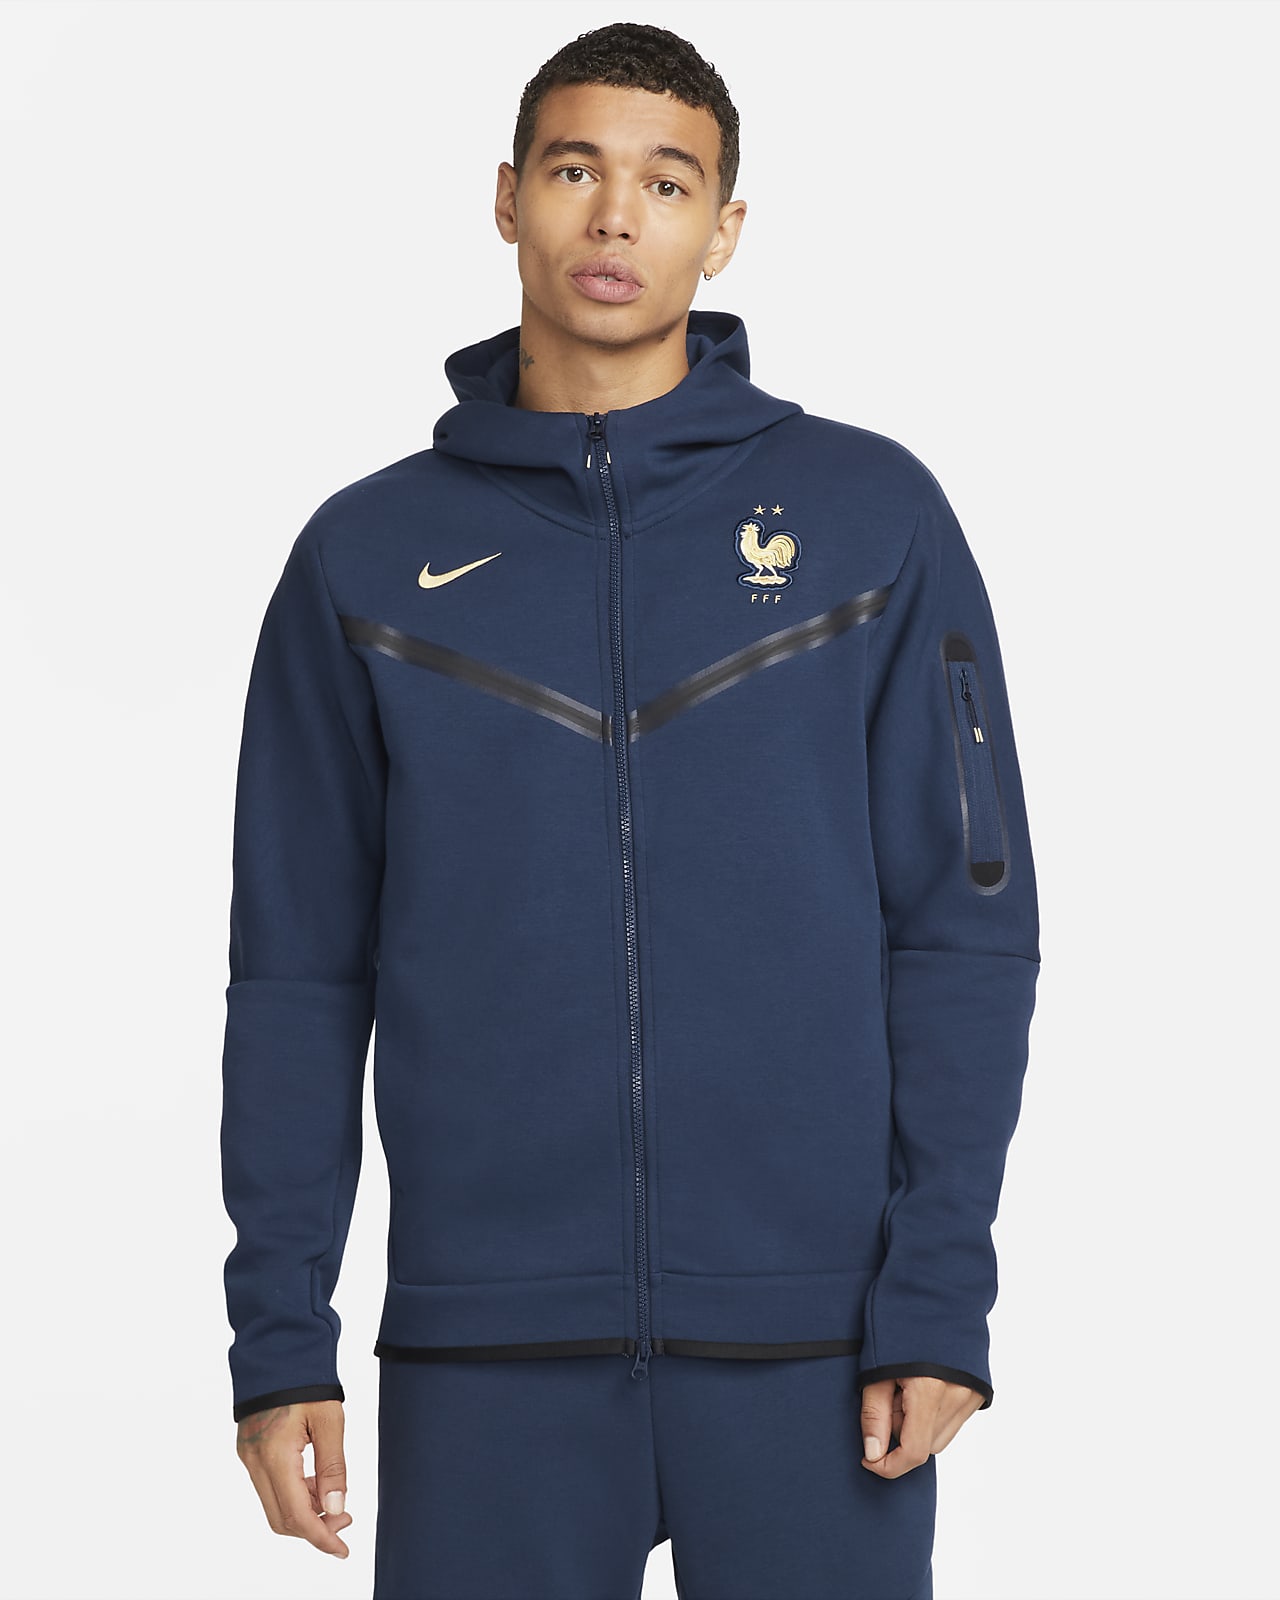 Nike Men's Sportswear Tech Fleece Full-Zip Hoodie - Red/Blue